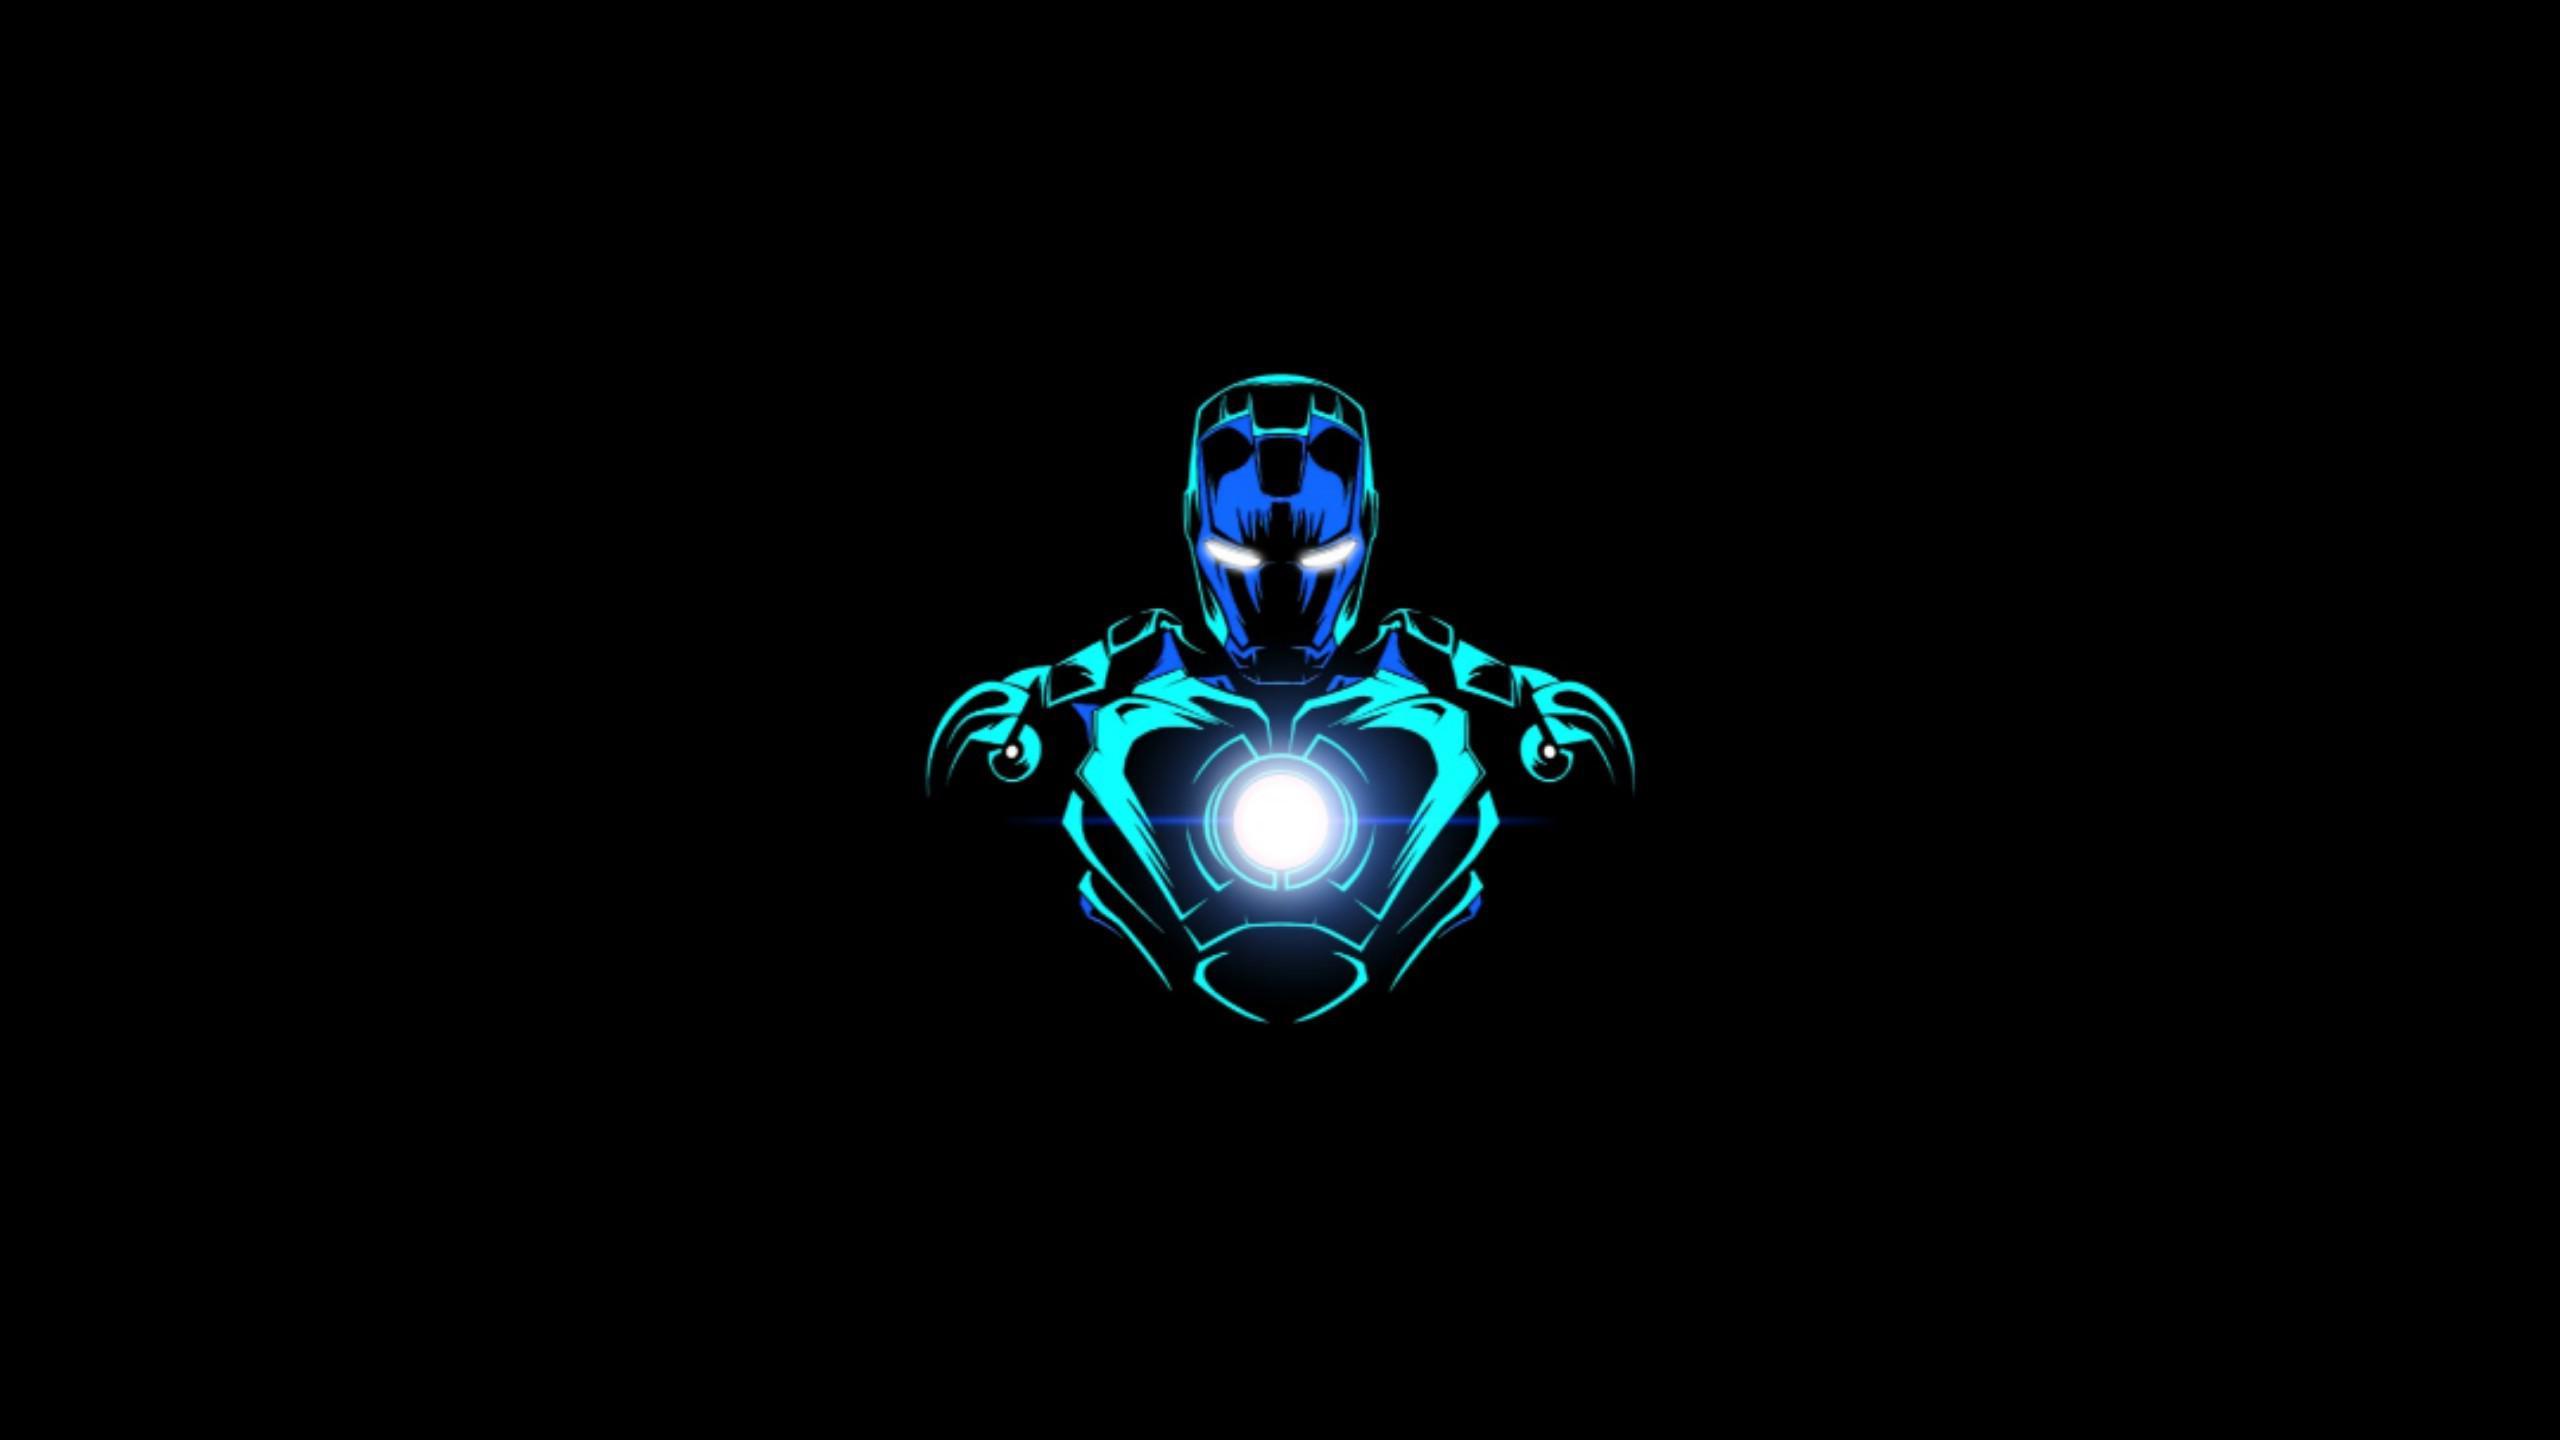 Blue Iron Man Wallpapers sẽ làm say đắm trái tim của bạn với những tông màu xanh đầy uyển chuyển, tạo nên một màn tranh tài hoàn toàn mới cho người sắt. Bộ sưu tập này sẽ thỏa mãn cả những fan của màu xanh và những fan của Iron Man, mang tới một thế giới mới đầy thú vị và bất ngờ.